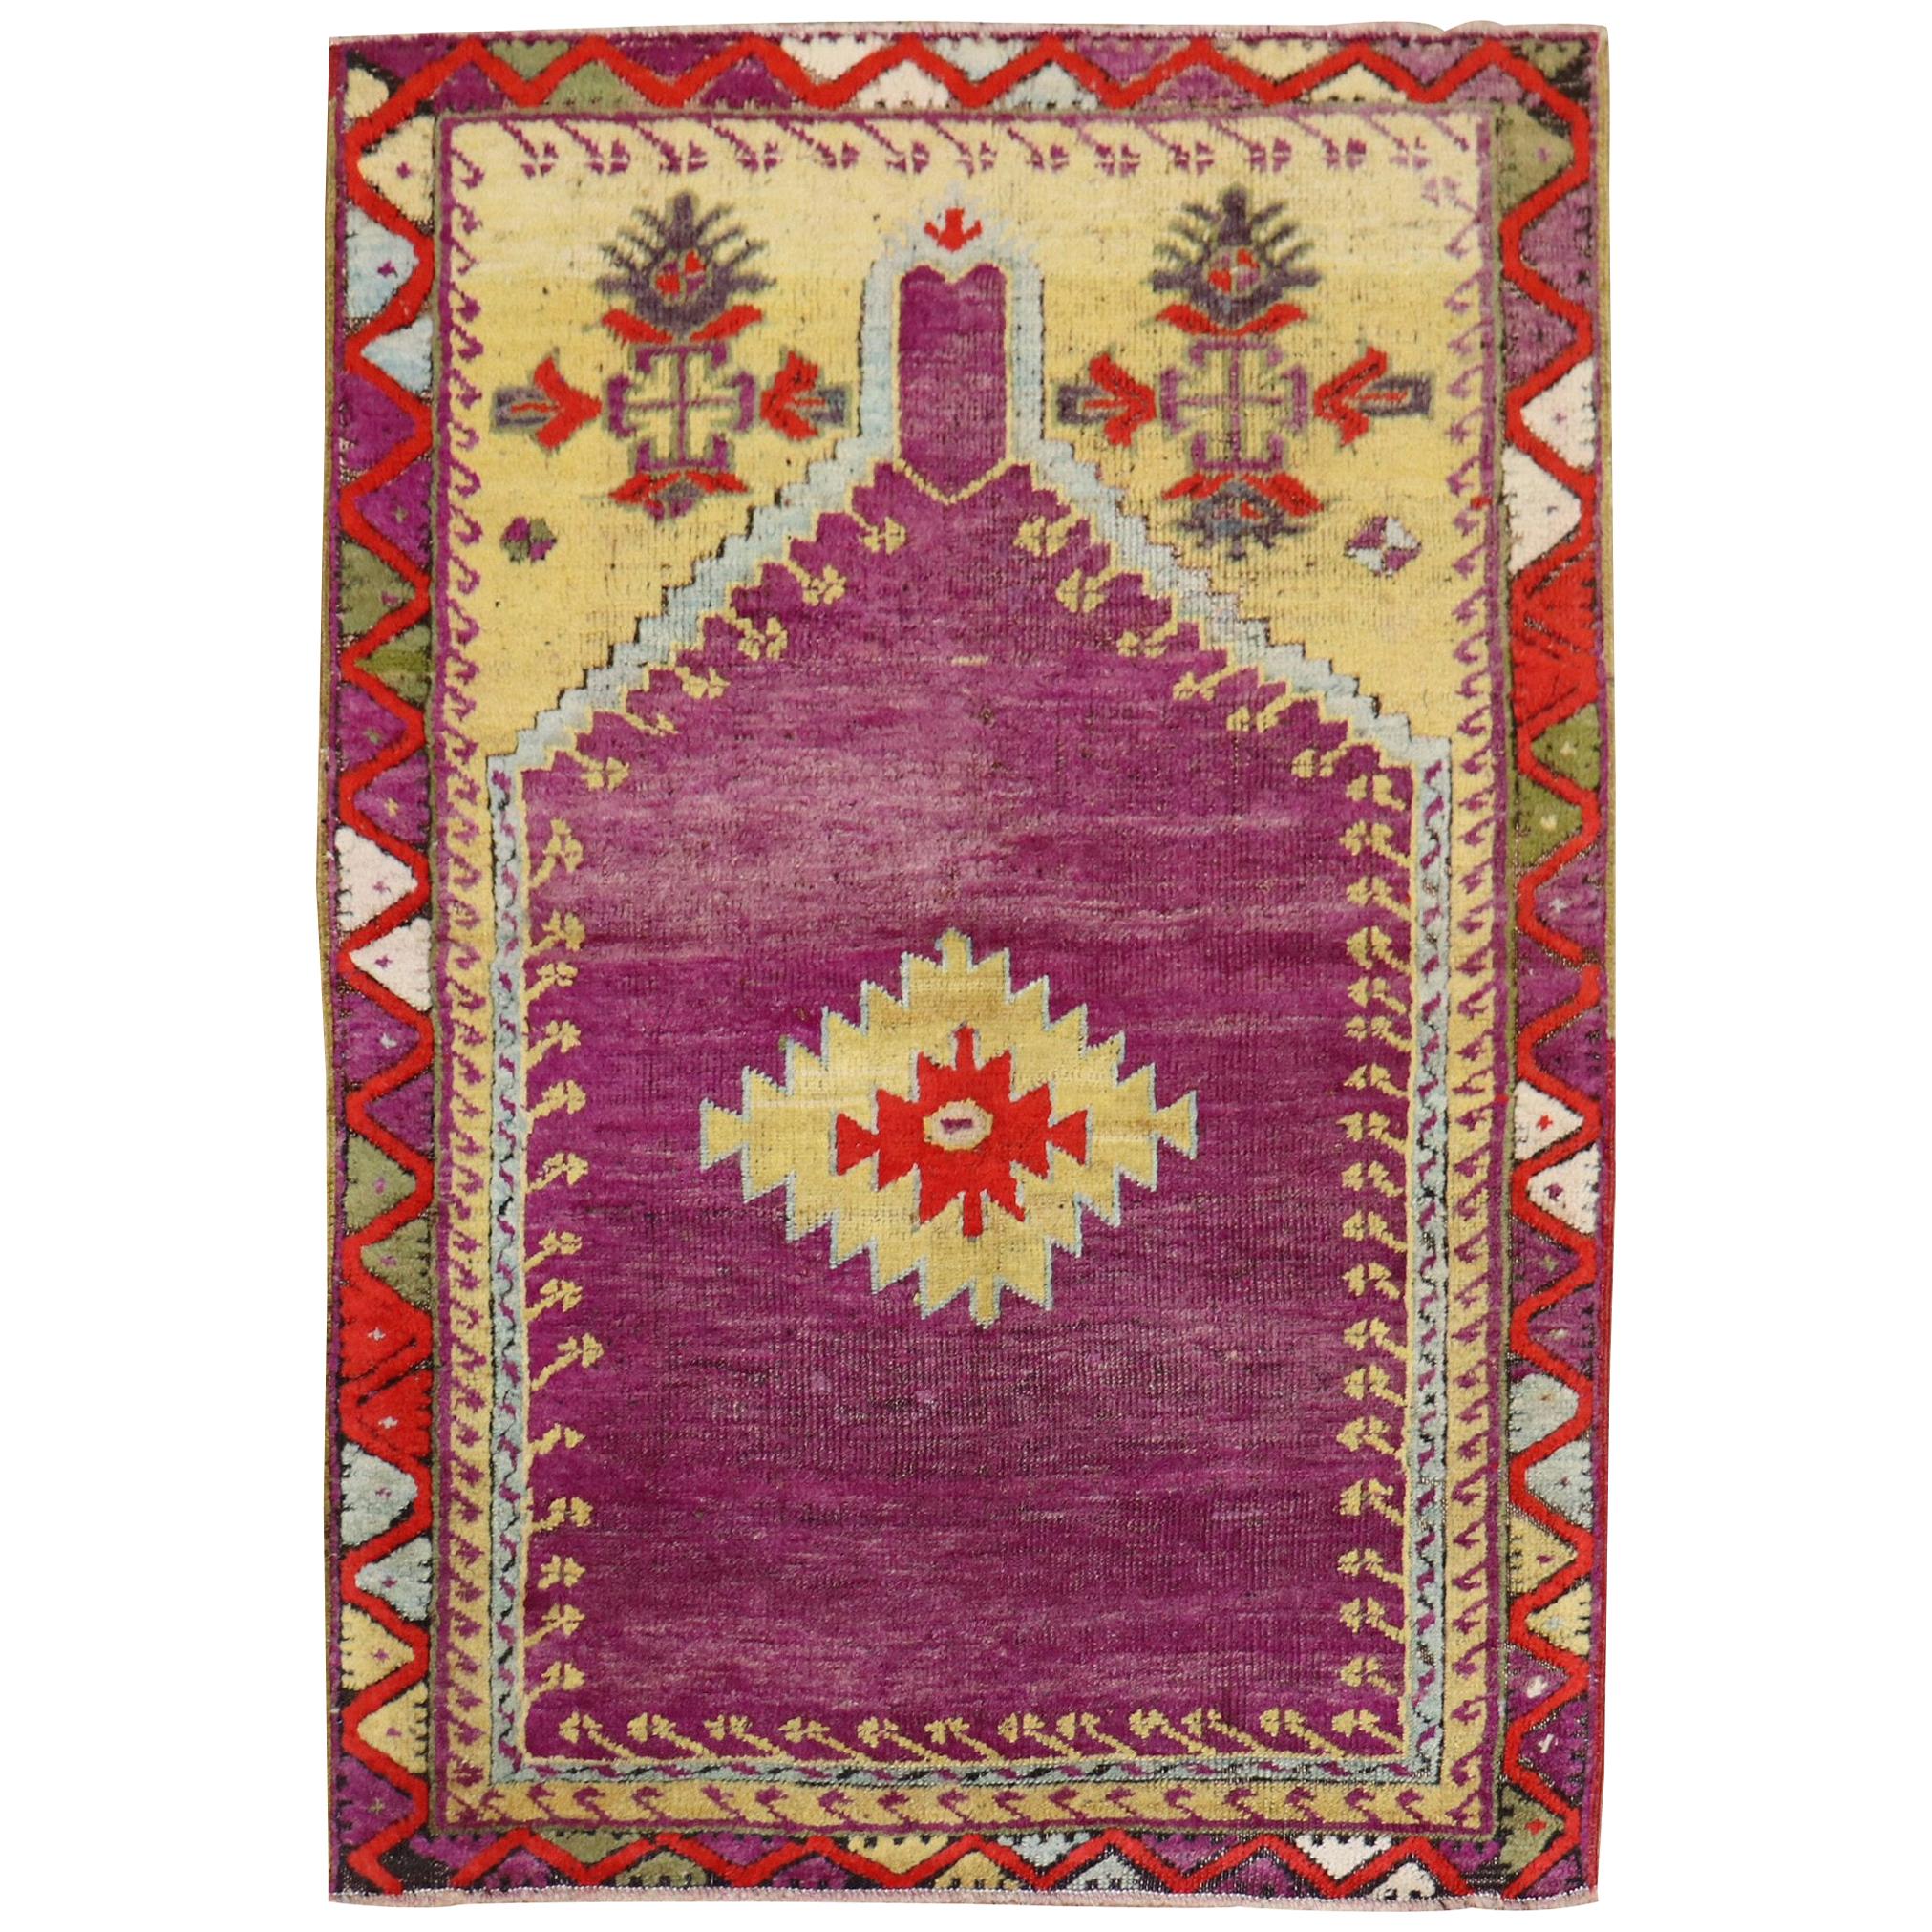 Violet Antique Turkish Melas Prayer Niche Rug